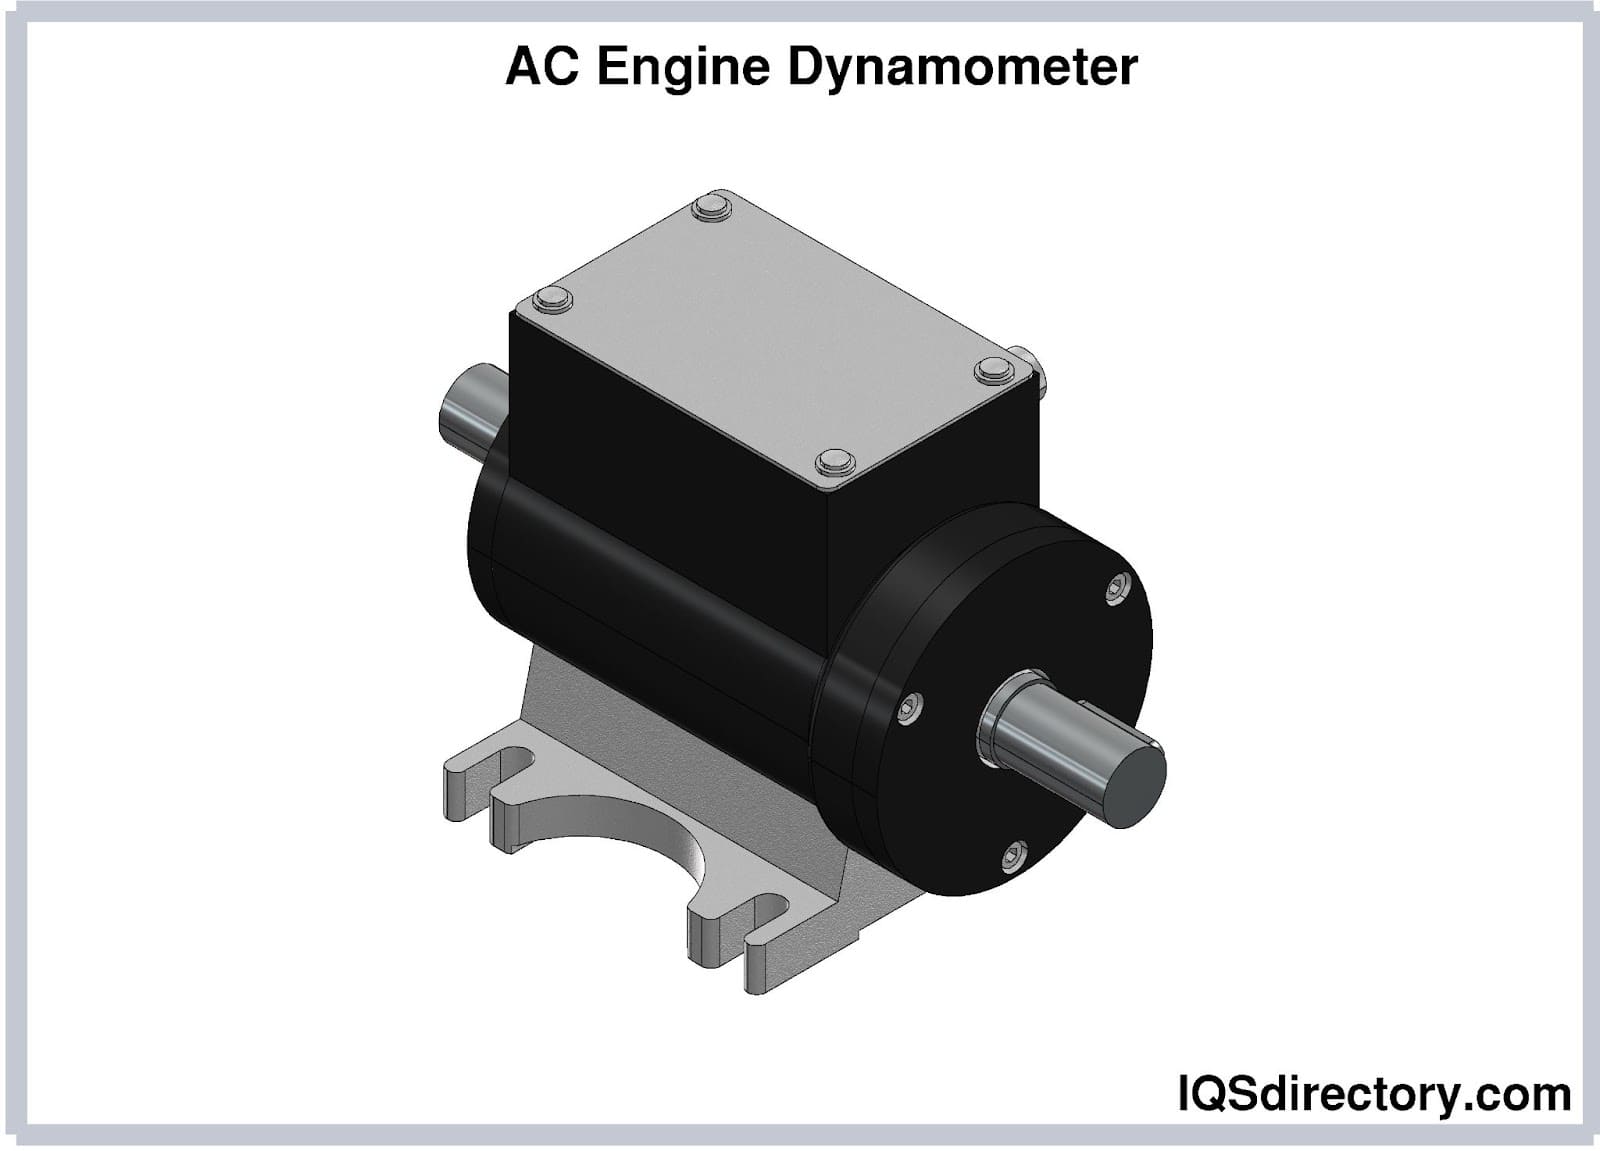 AC Engine Dynamometer